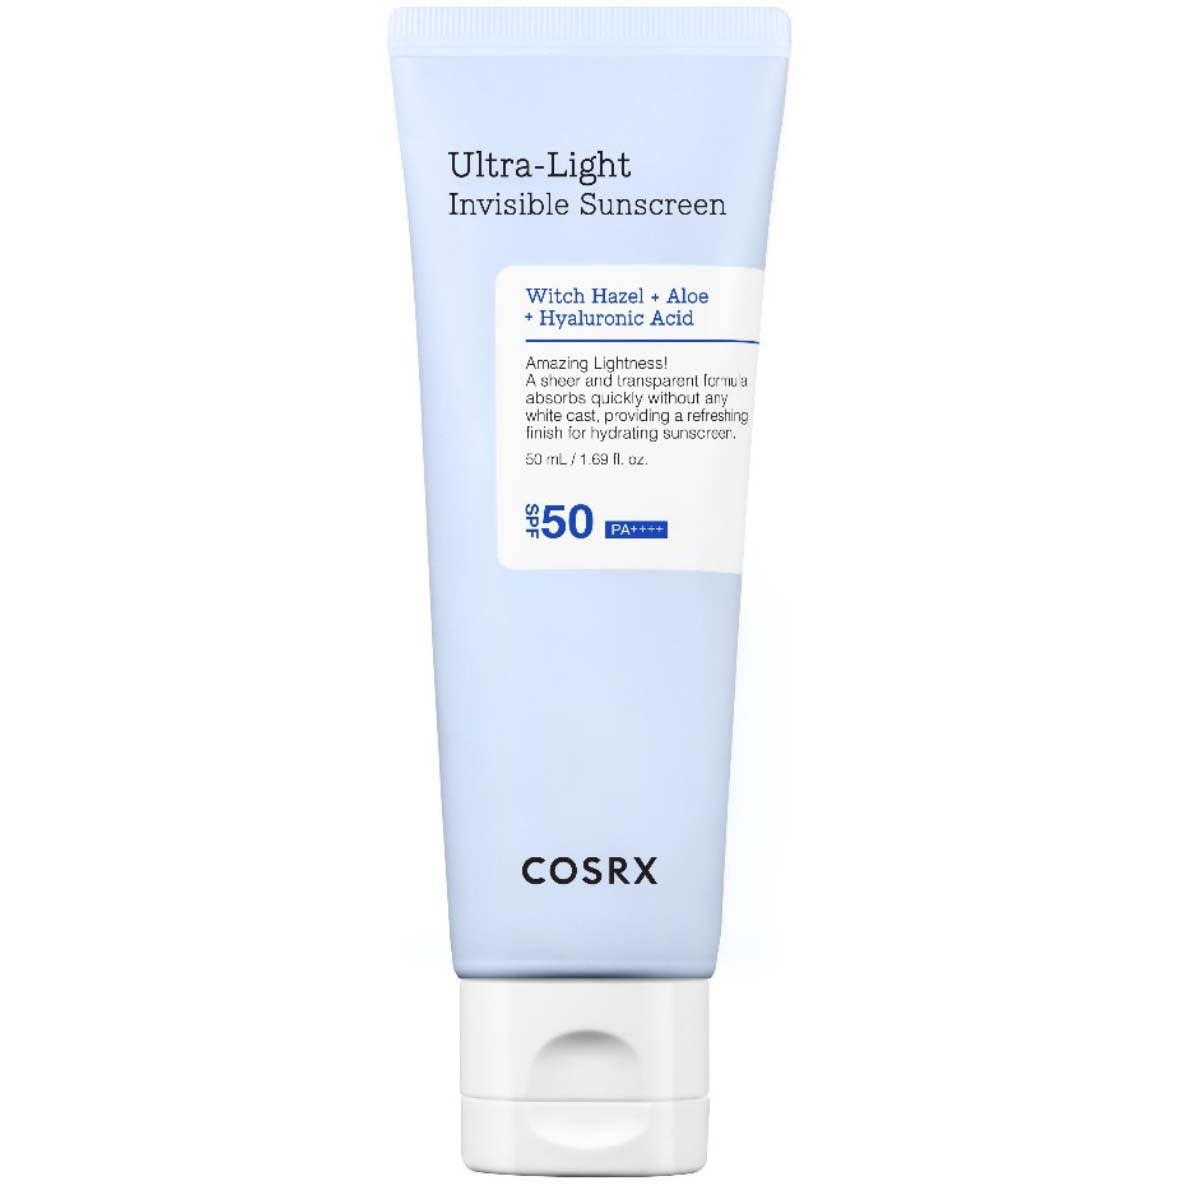 Cosrx Ultra-Light Invisible Sunscreen SPF50 50 ml